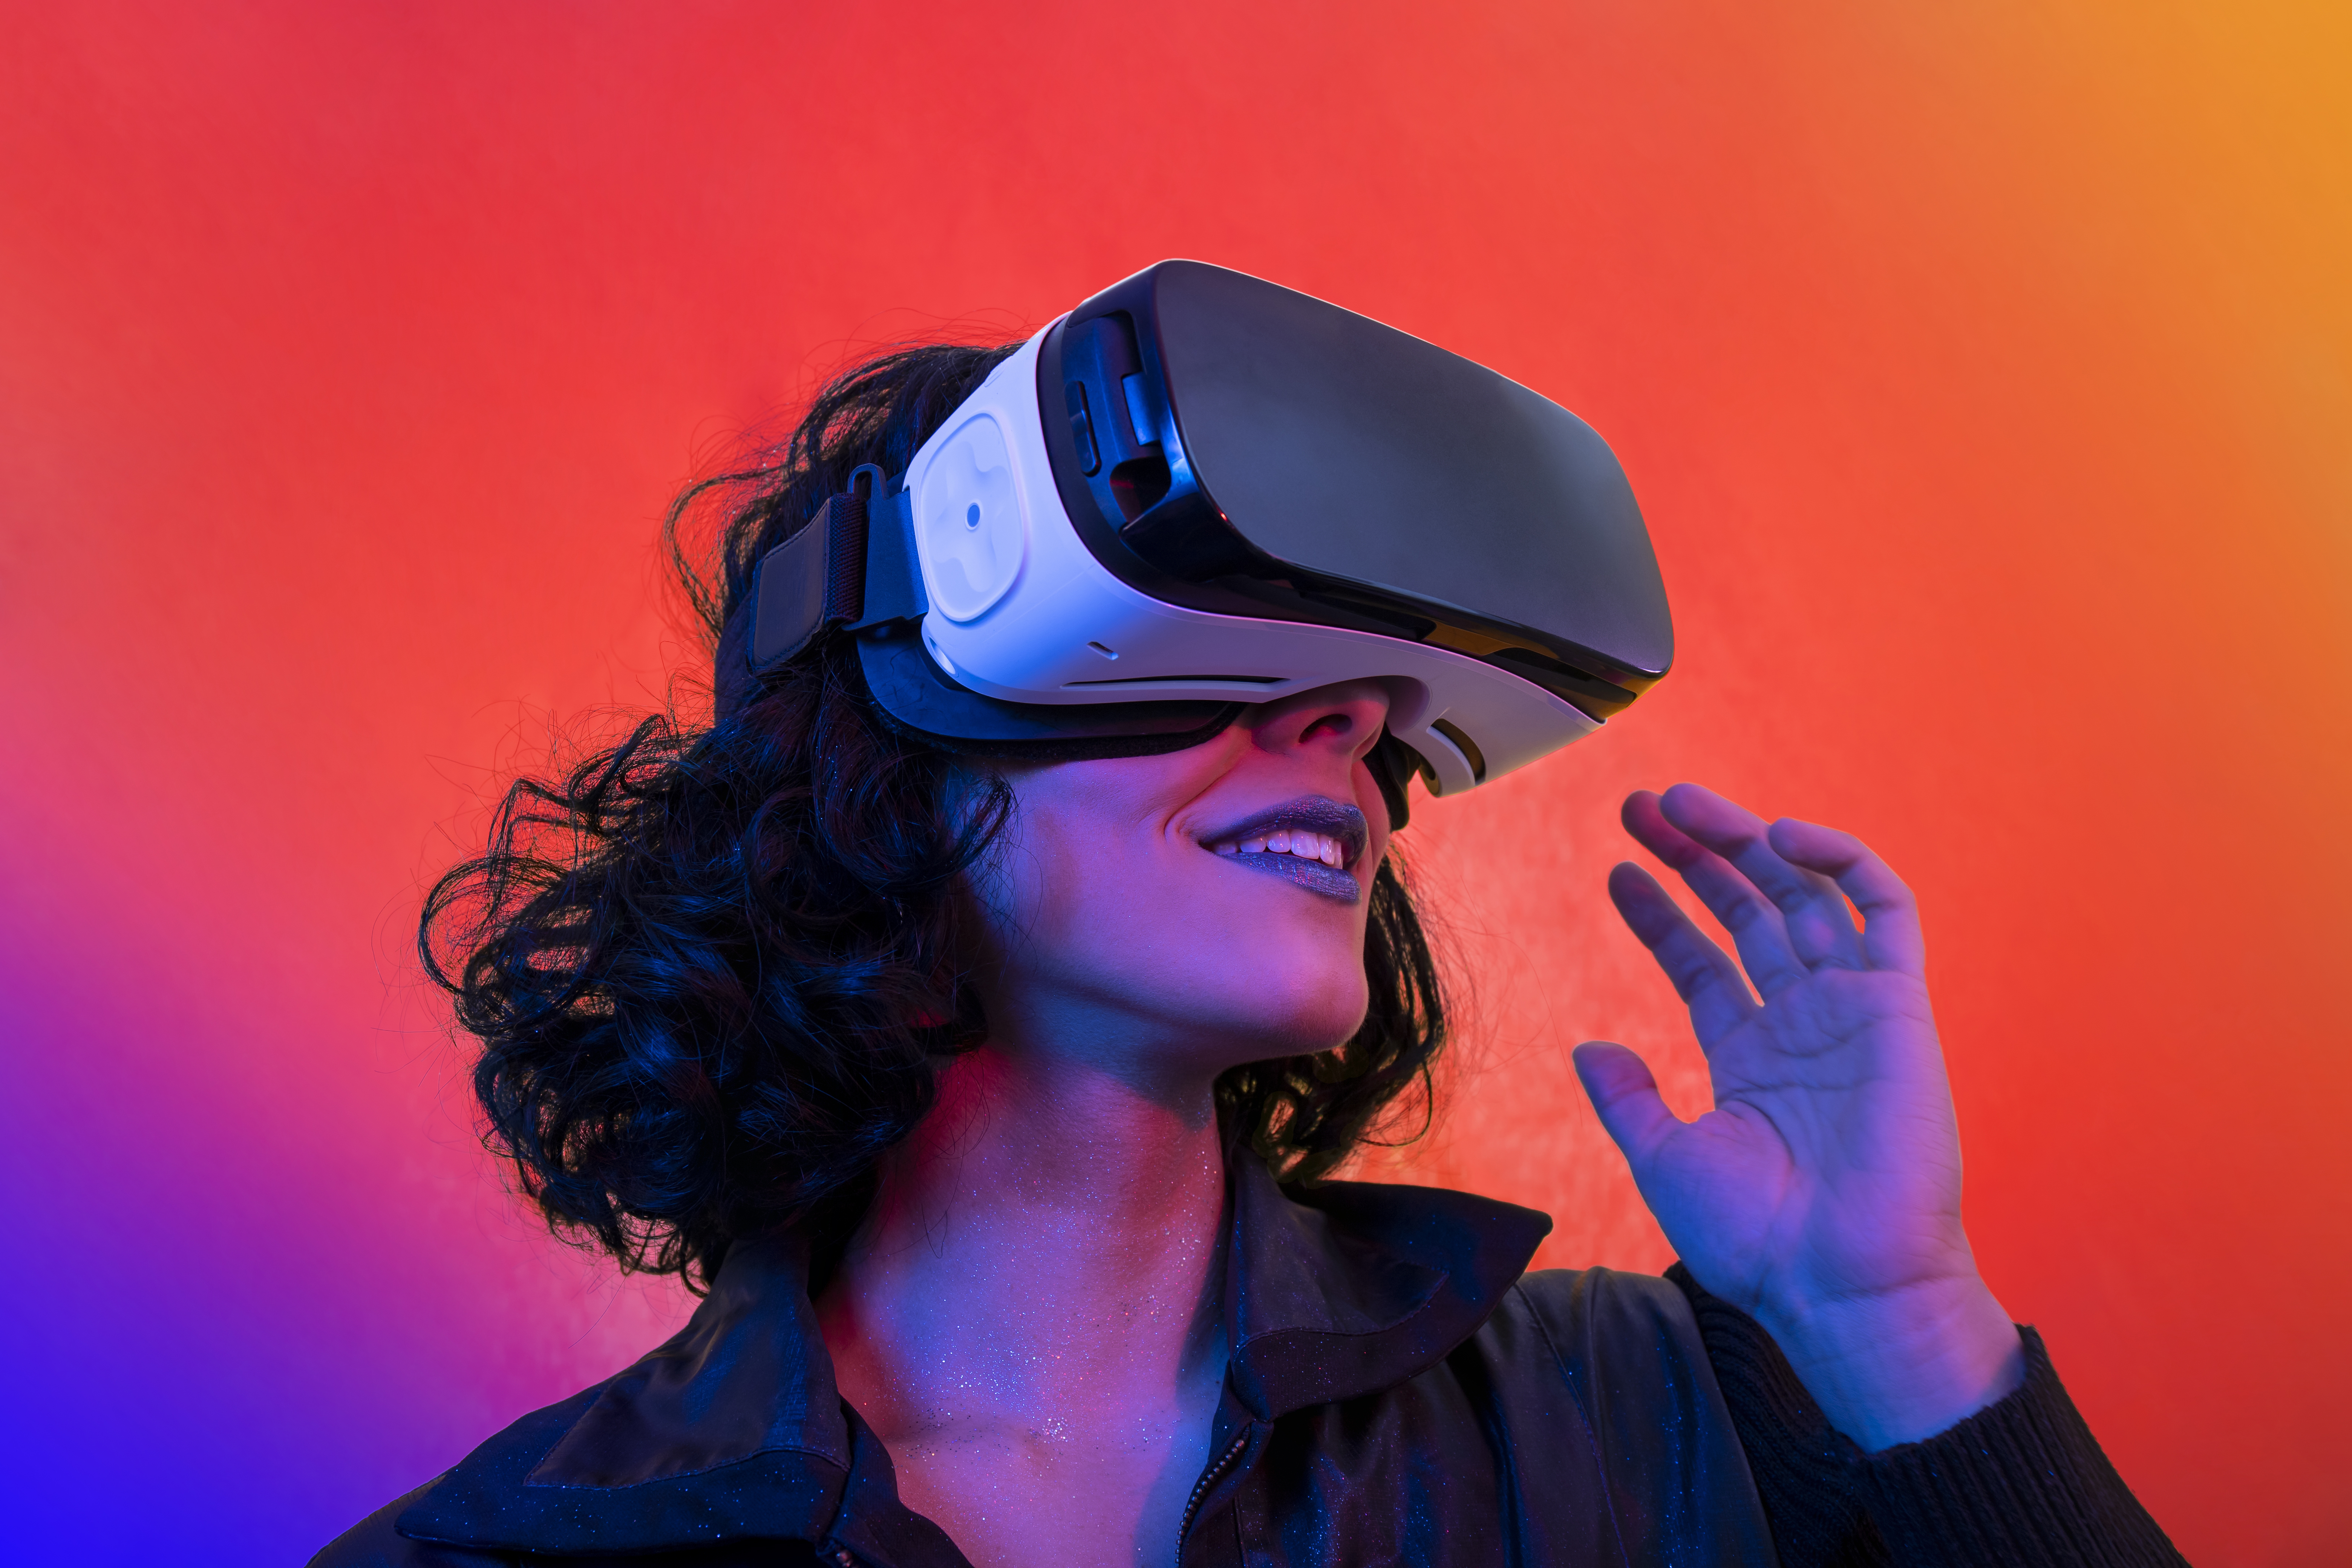 Tout savoir sur le casque de réalité virtuelle